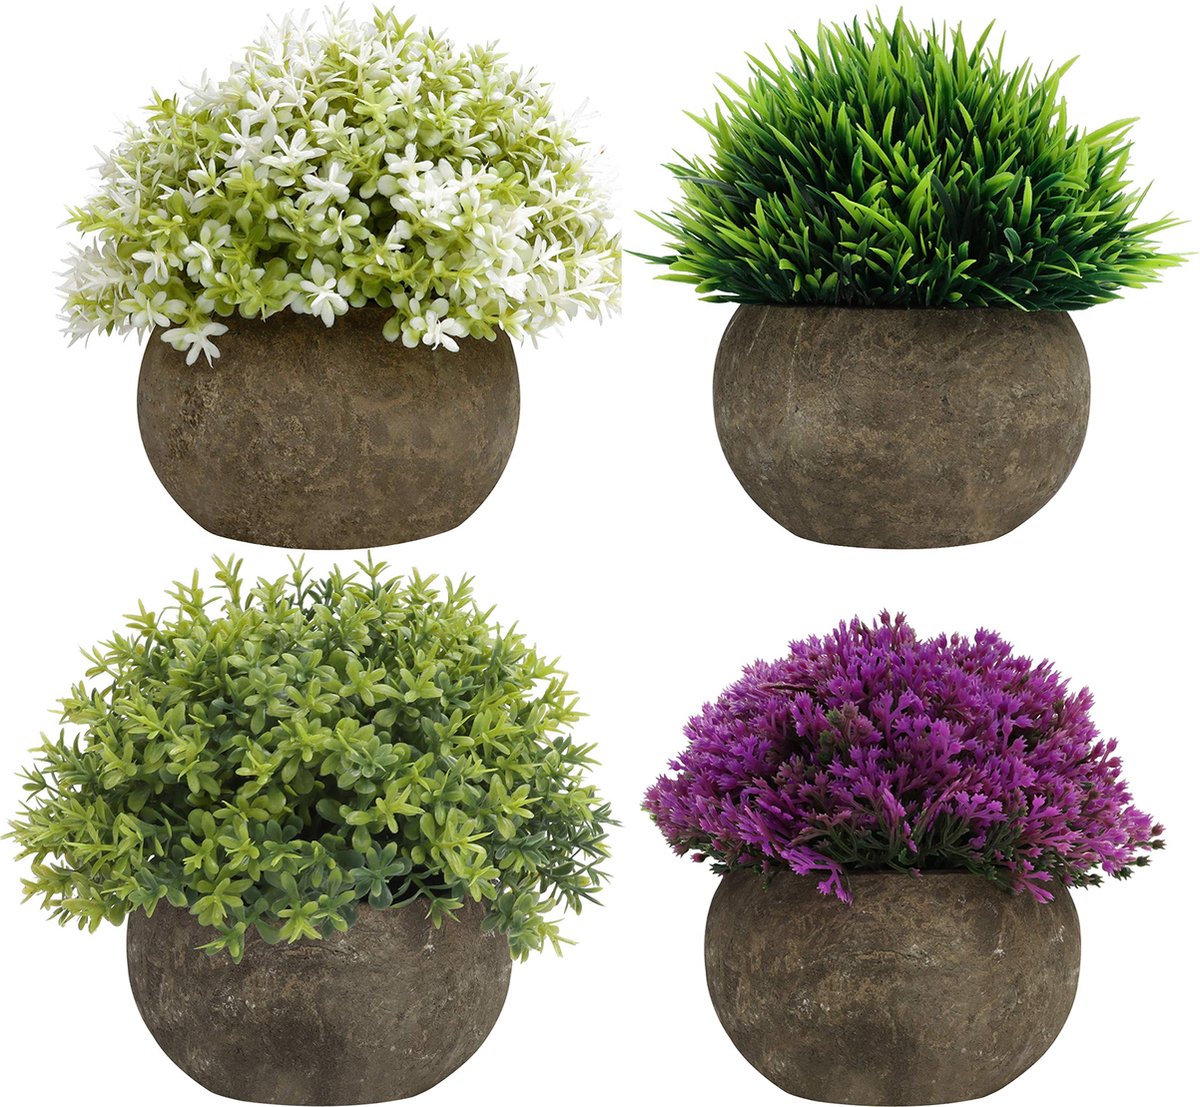 Miniplantes : 5 plantes parfaites pour votre intérieur